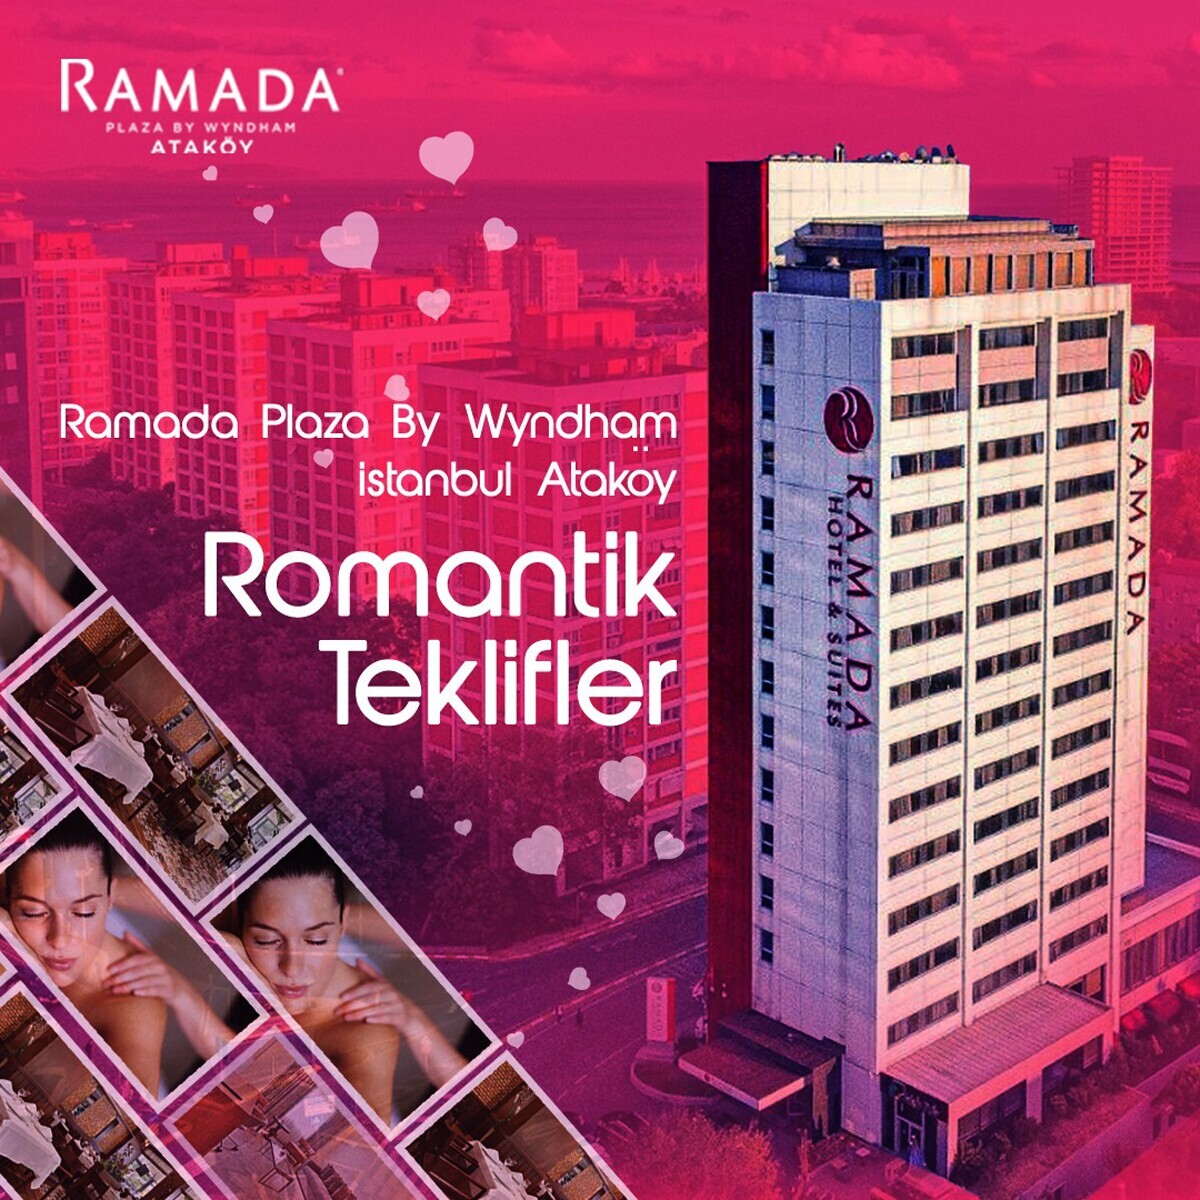 Ataköy Ramada Plaza By Wyndham Istanbul Hotel’de 2 Kişilik Romantik Paketler